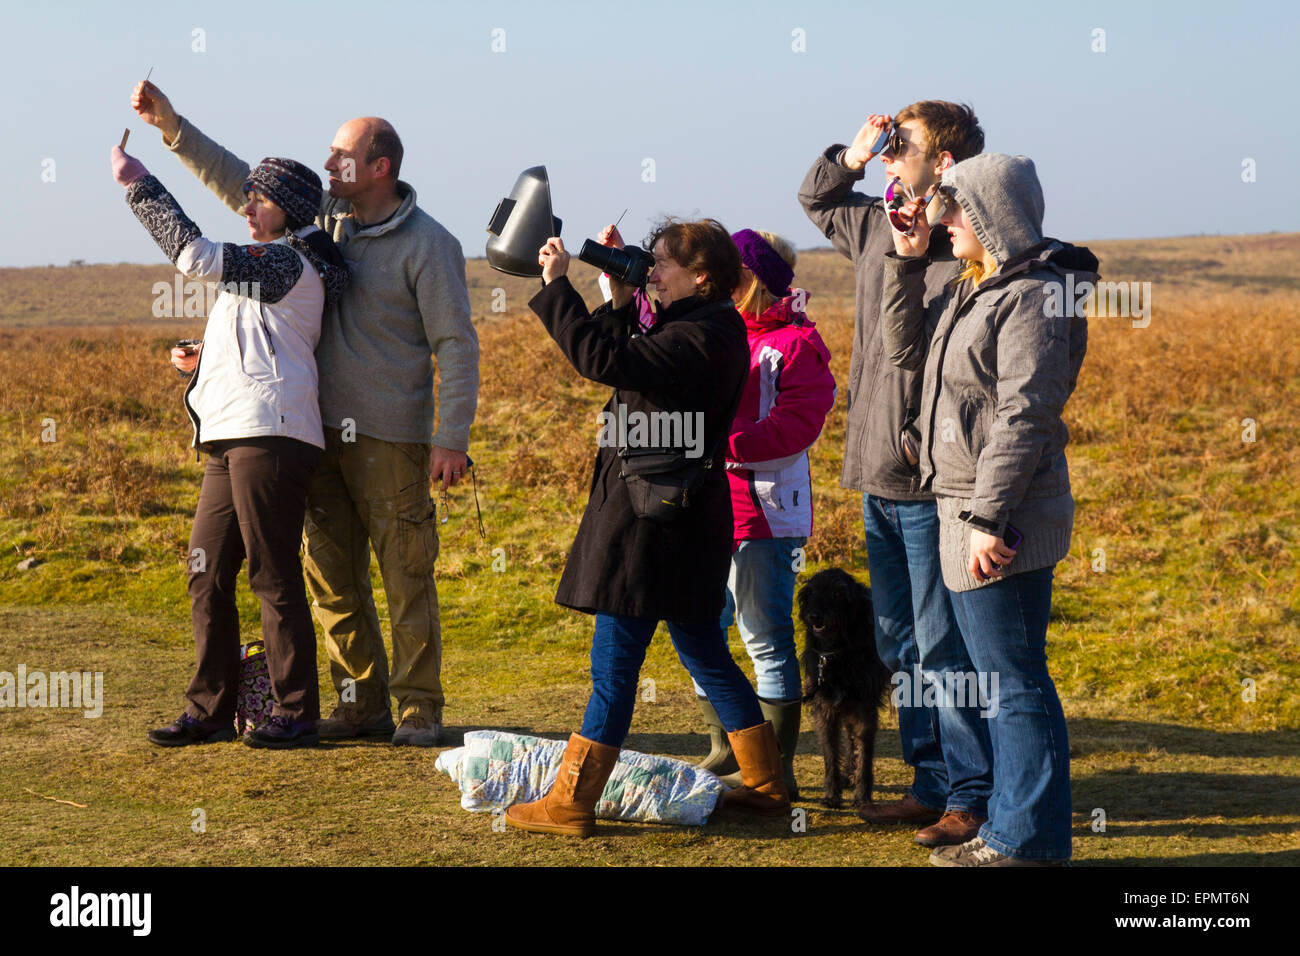 Les gens qui regardent les specacular éclipse solaire partielle, le 20 mars, 2015, sur la lande, la péninsule de Gower, Pays de Galles, Royaume-Uni Banque D'Images